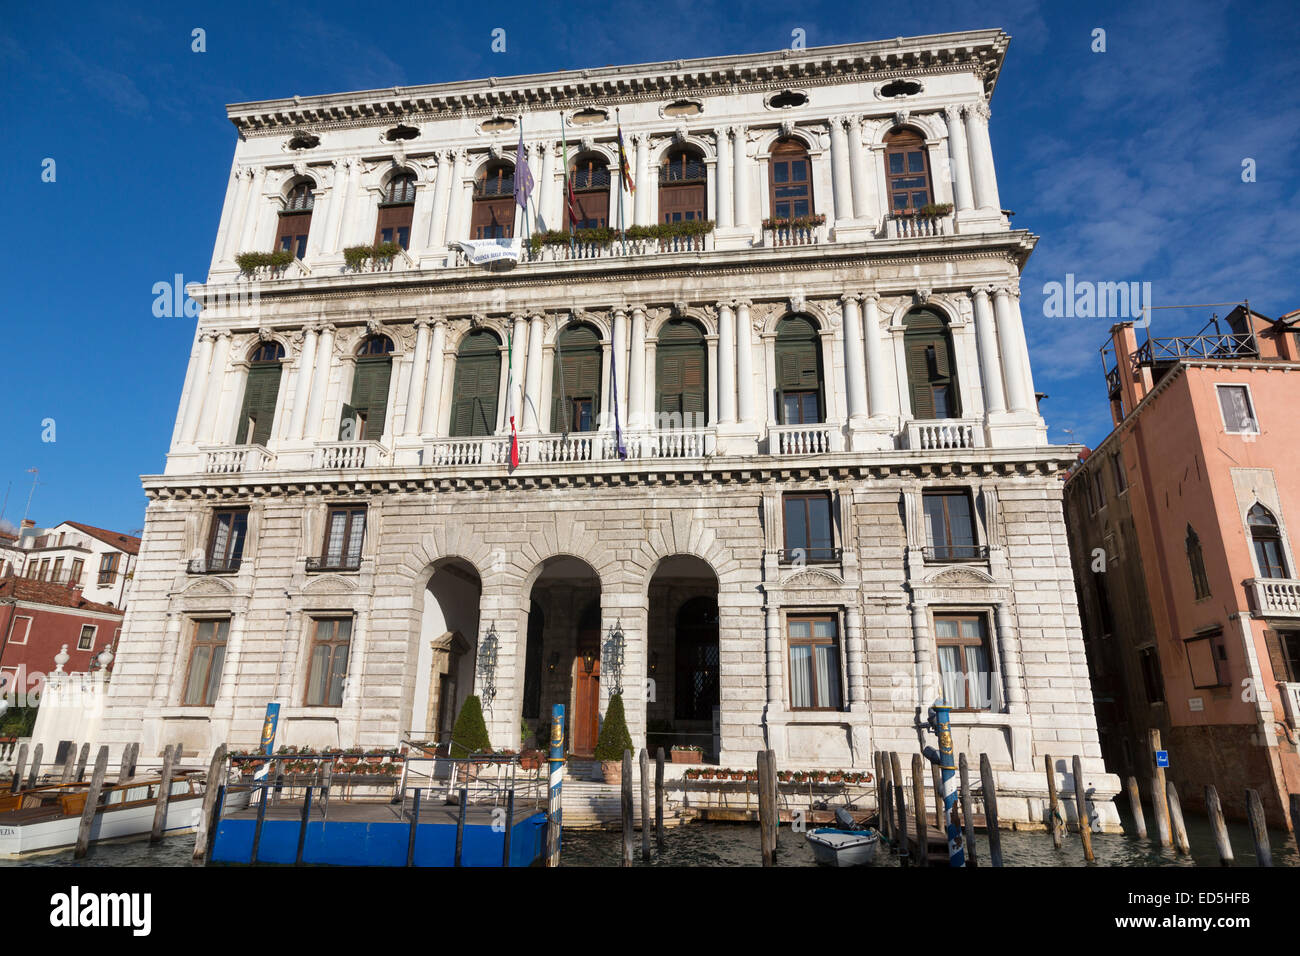 Villas et palais, Grand Canal, Venise, Italie Banque D'Images